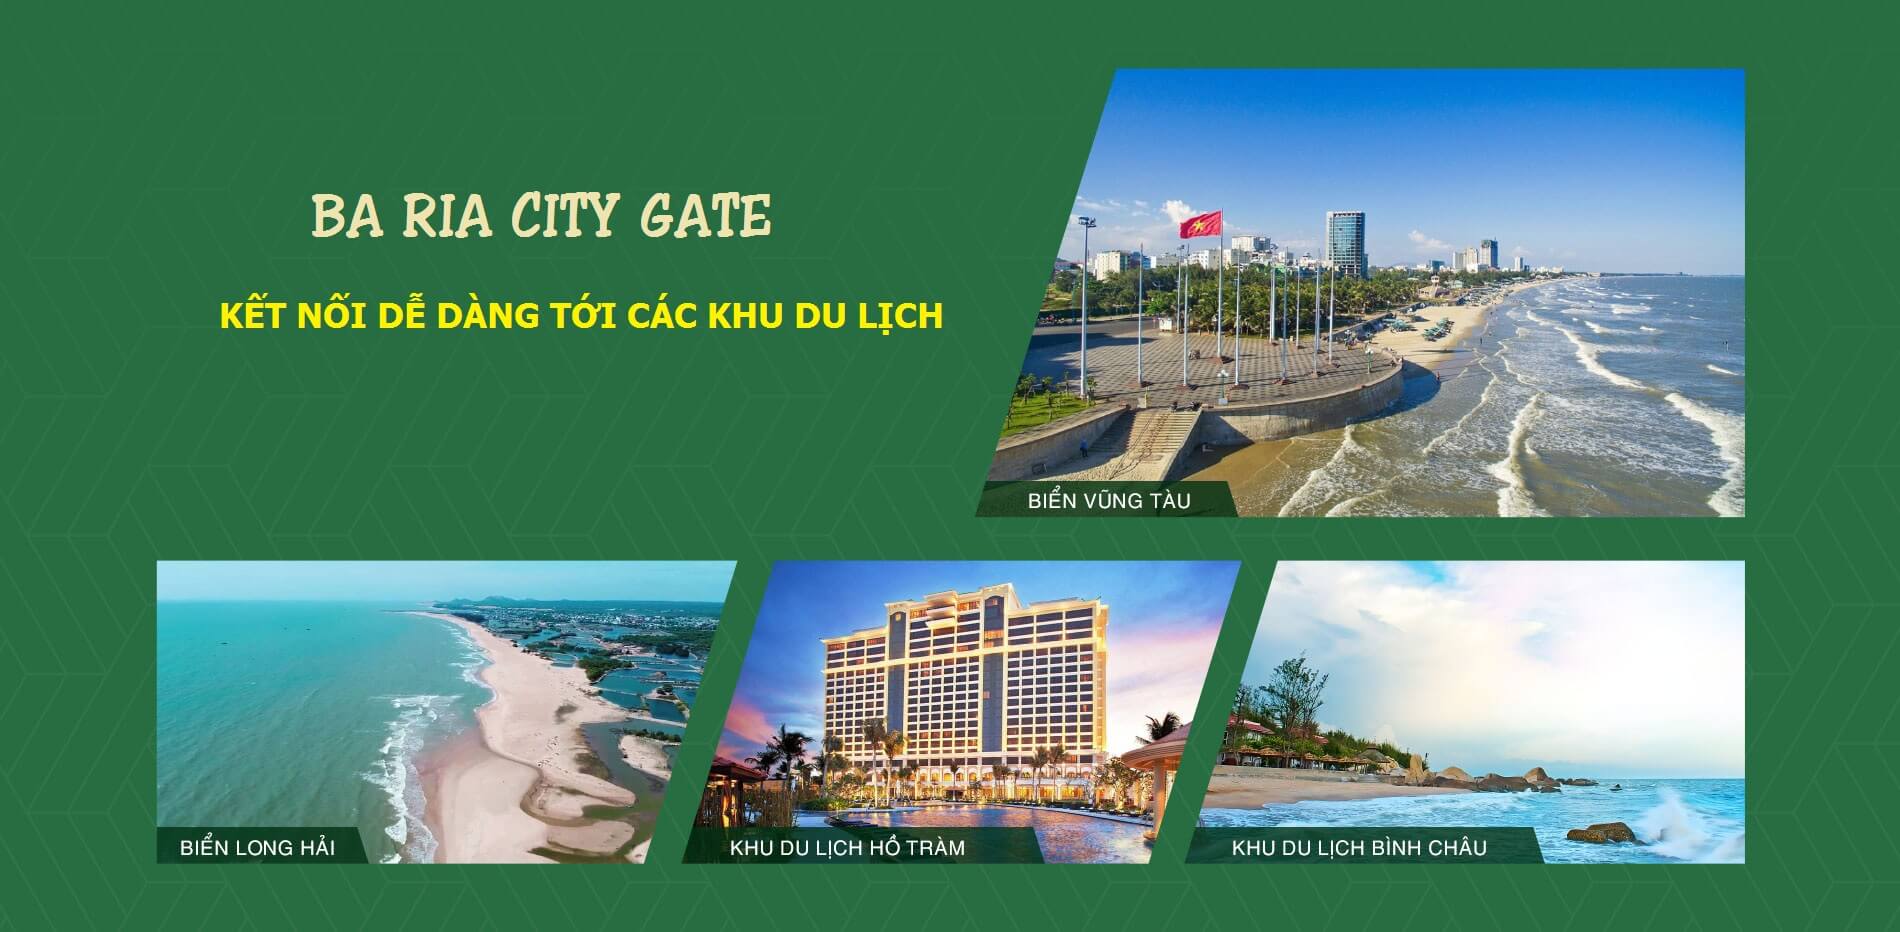 ba ria city gate